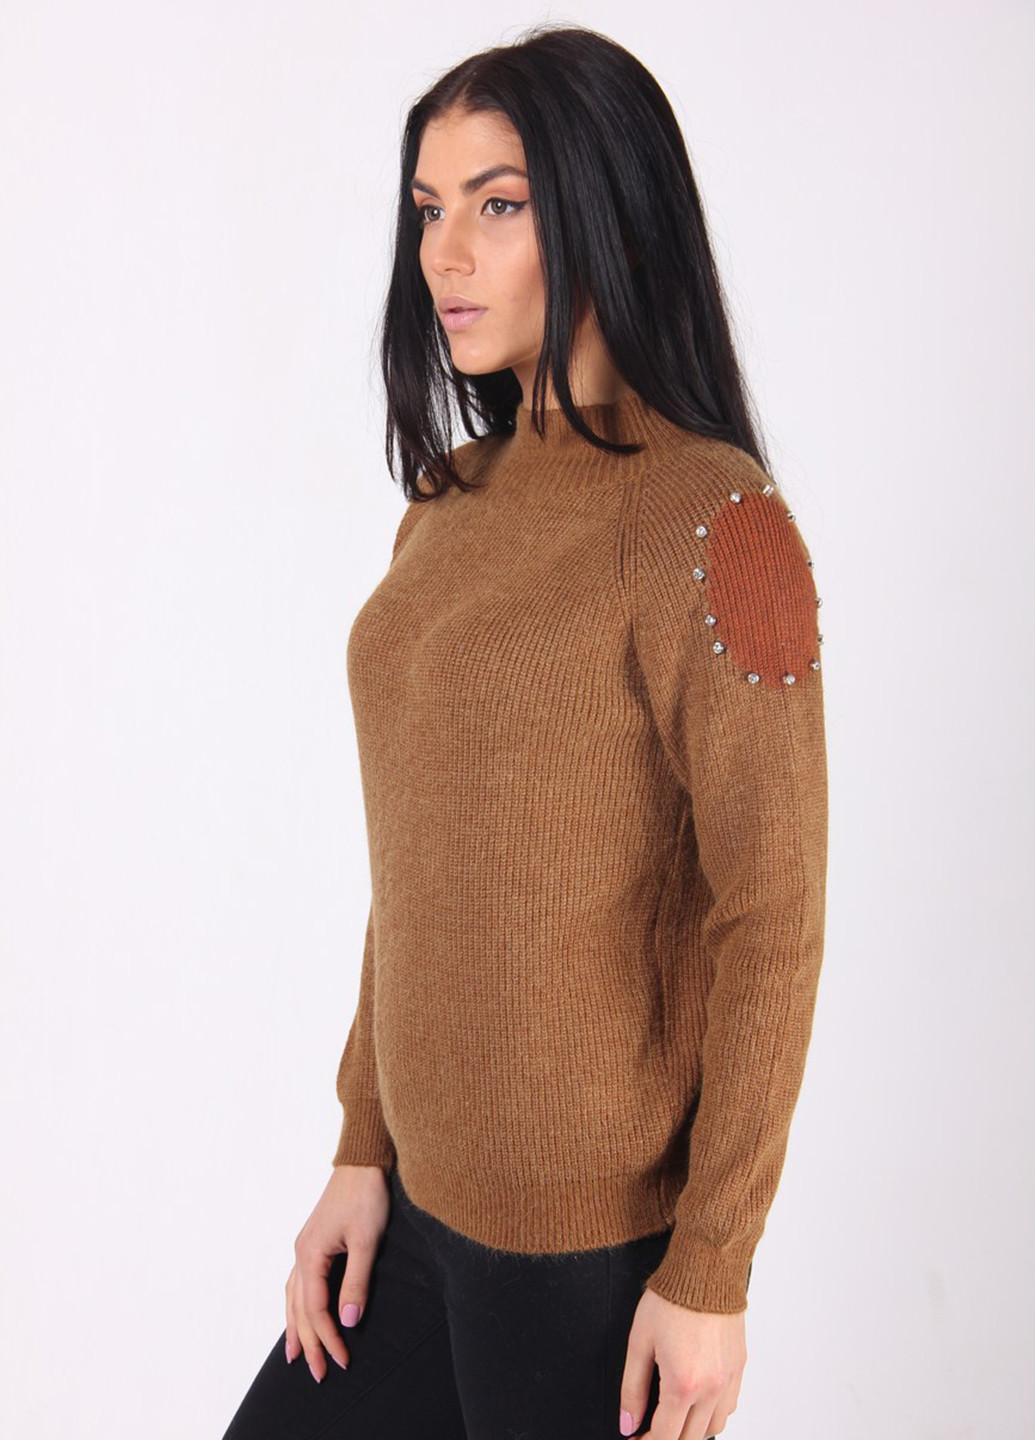 Коричневый демисезонный свитер Ladies Fasfion